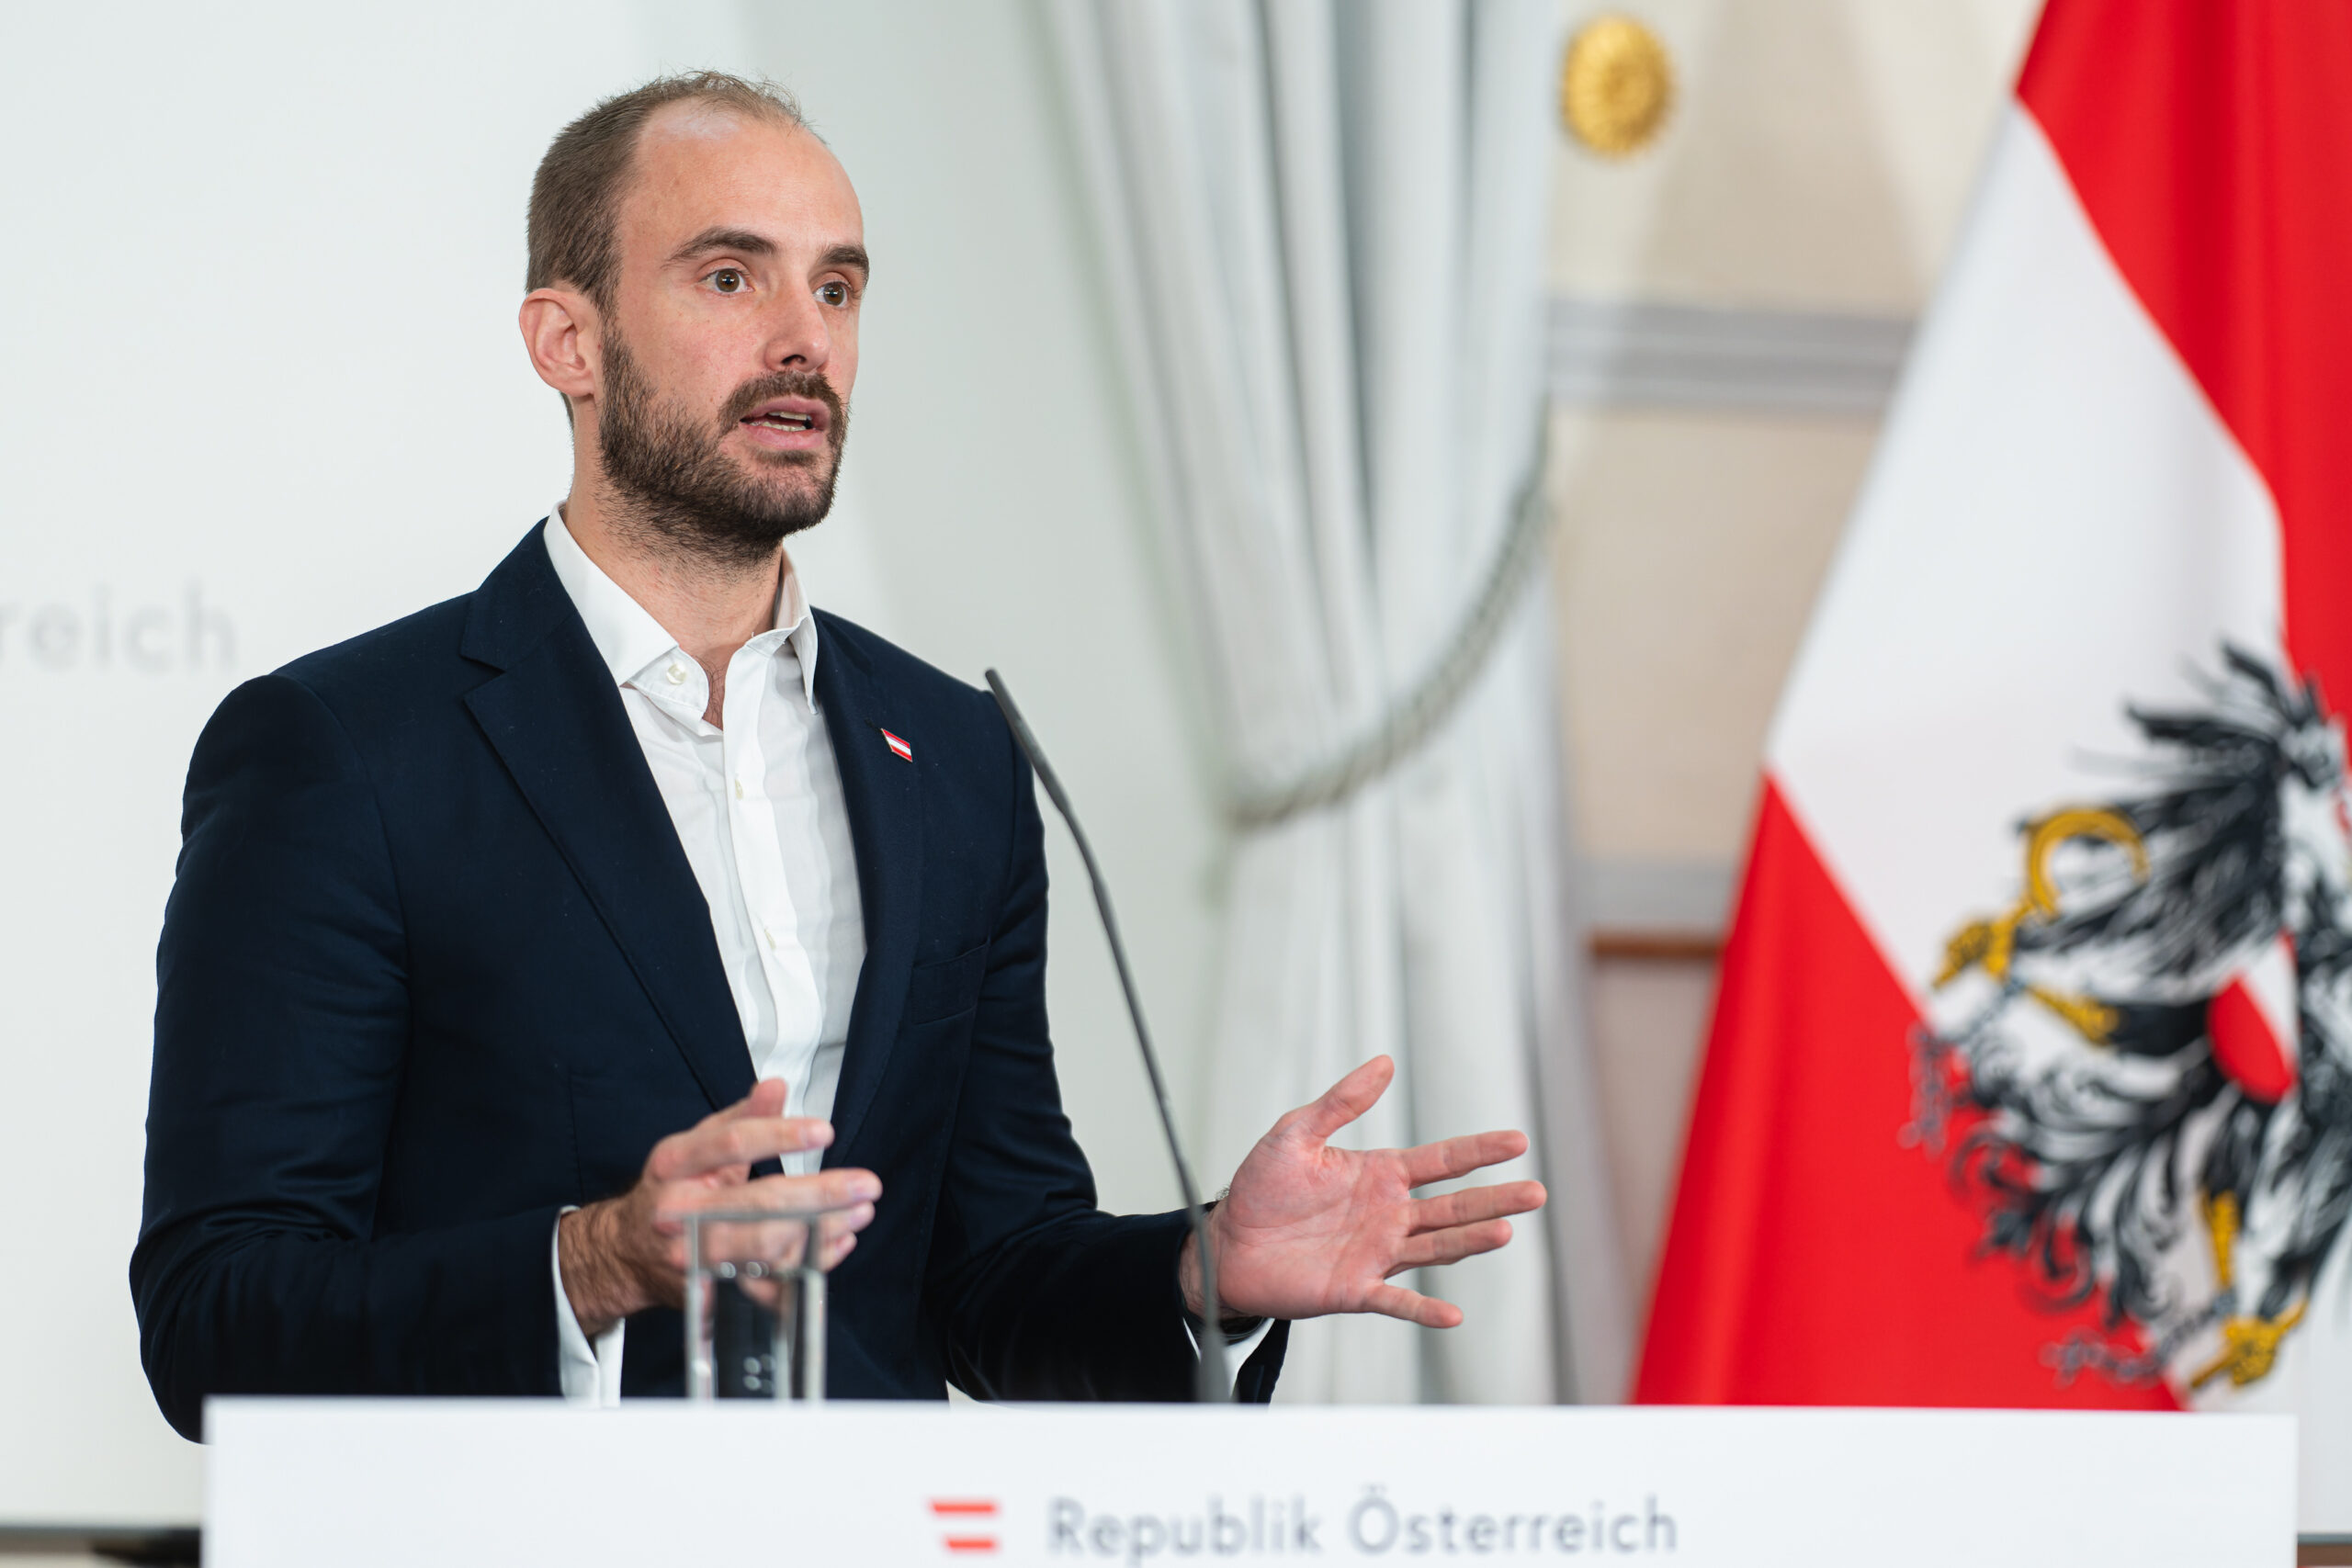 Staatssekretär Florian Tursky hat es sich zum Ziel gemacht Österreich flächendeckend bis 2030 mit Gigabitanschlüssen auszustatten. Foto: BKA/Christopher Dunker